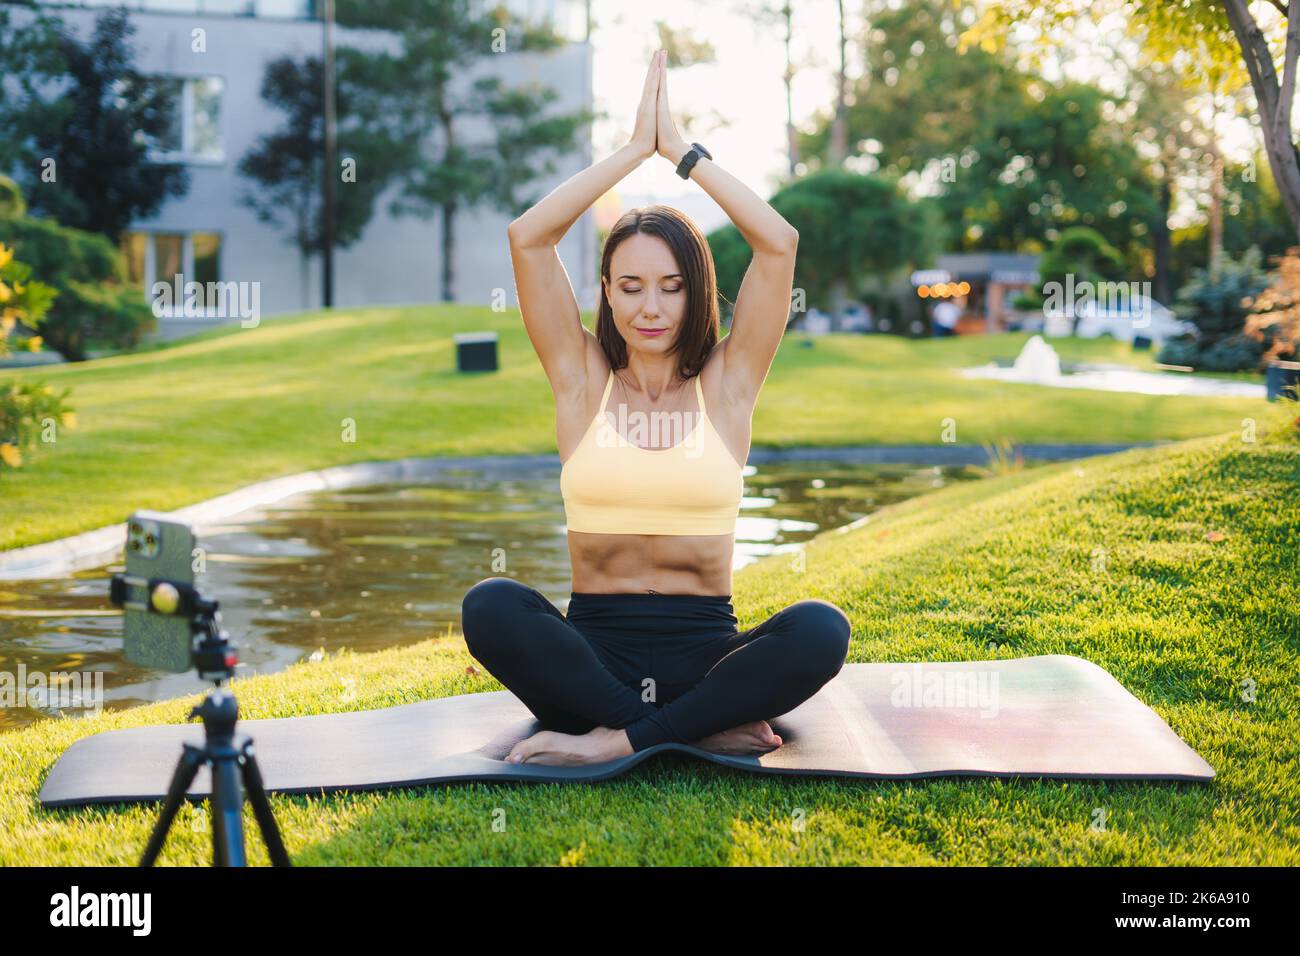 Portrait en gros plan de la jolie femme brune en vêtements de sport assise sur un tapis de yoga au parc et s'étirant tout en filmant sur un appareil photo extérieur Banque D'Images